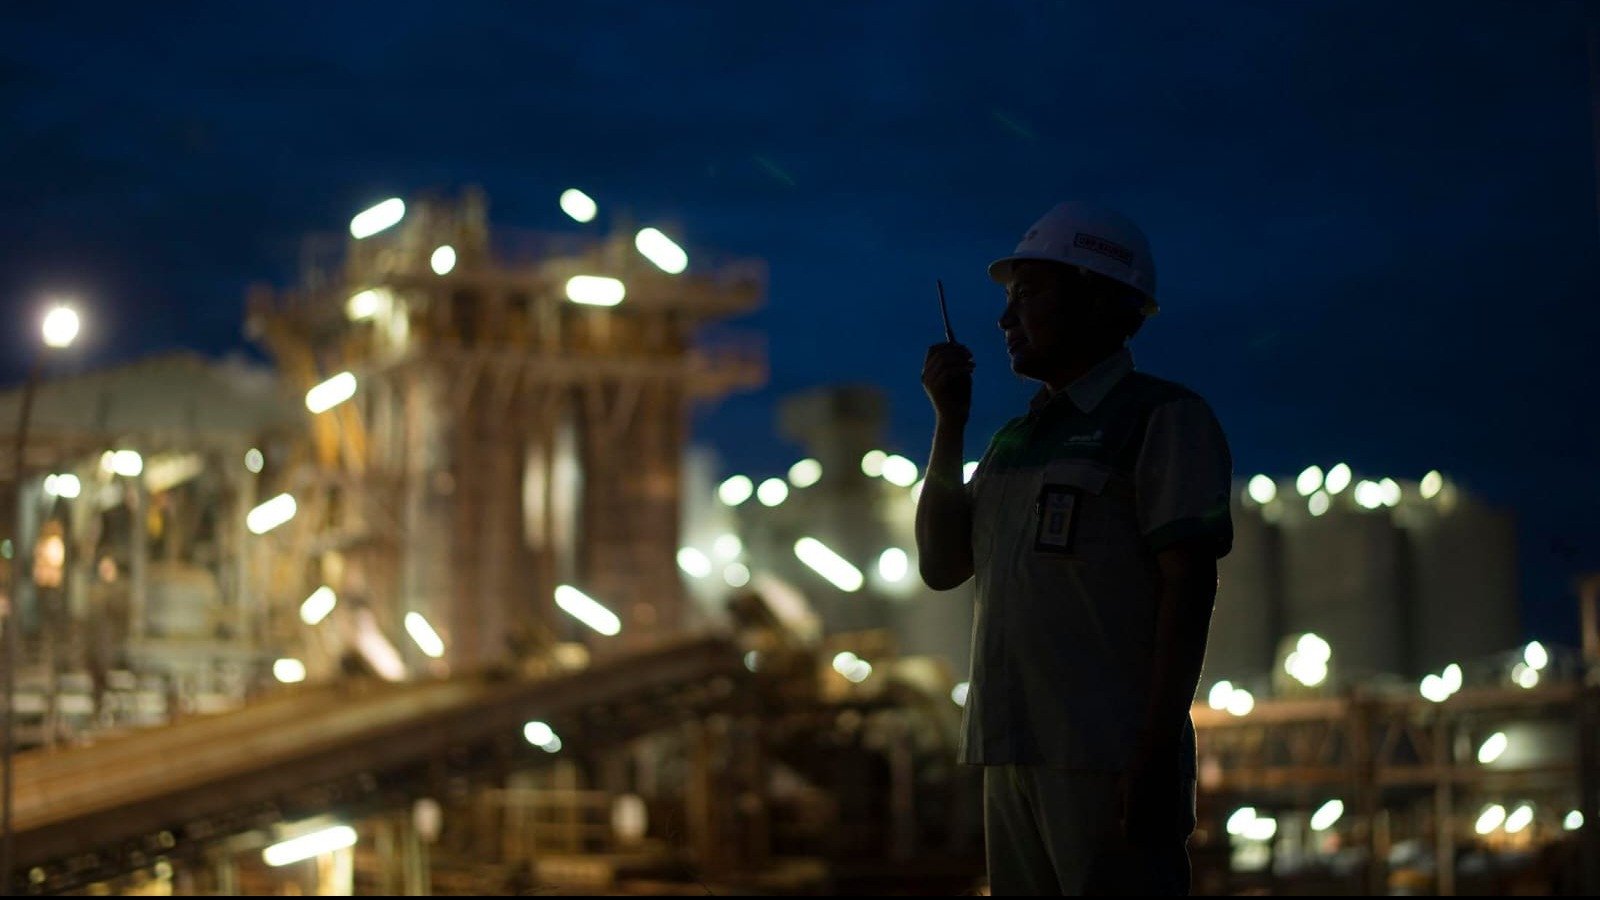 BUMN Holding Industri Pertambangan Indonesia MIND ID meningkatkan konsumsi energi dari sumber energi terbarukan hingga 18,25 juta Gigajoule (GJ) atau setara 5.068 Gigawatt hour (GWh) daya listrik sepanjang 2023.